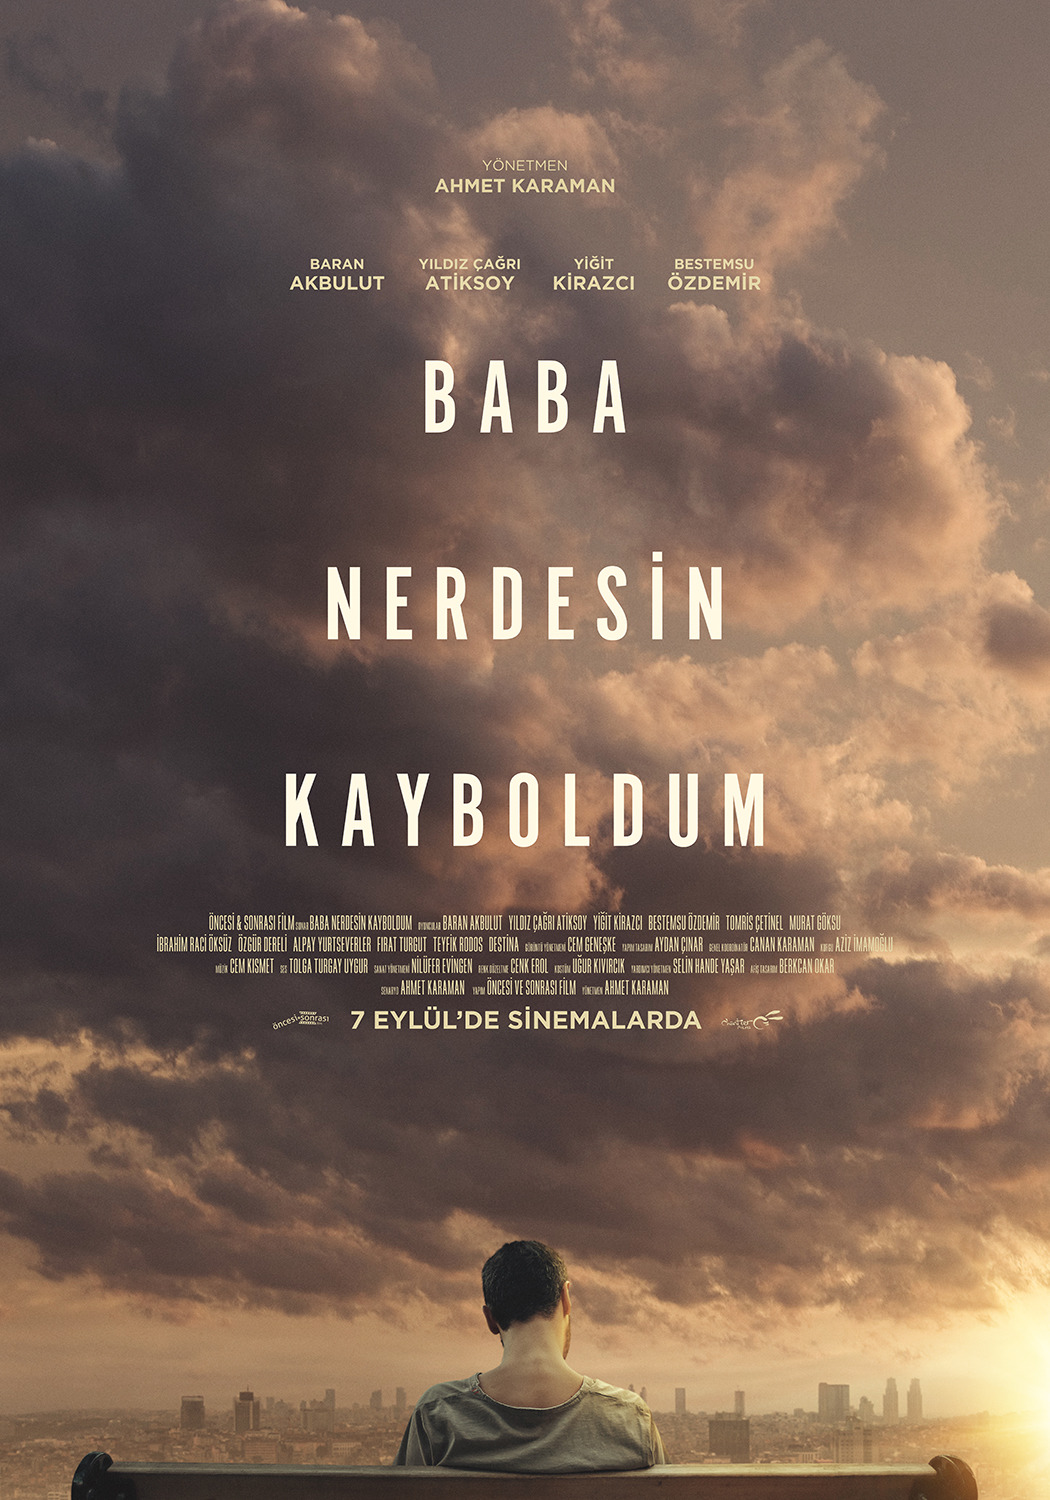 Extra Large Movie Poster Image for Baba Nerdesin Kayboldum (#1 of 5)